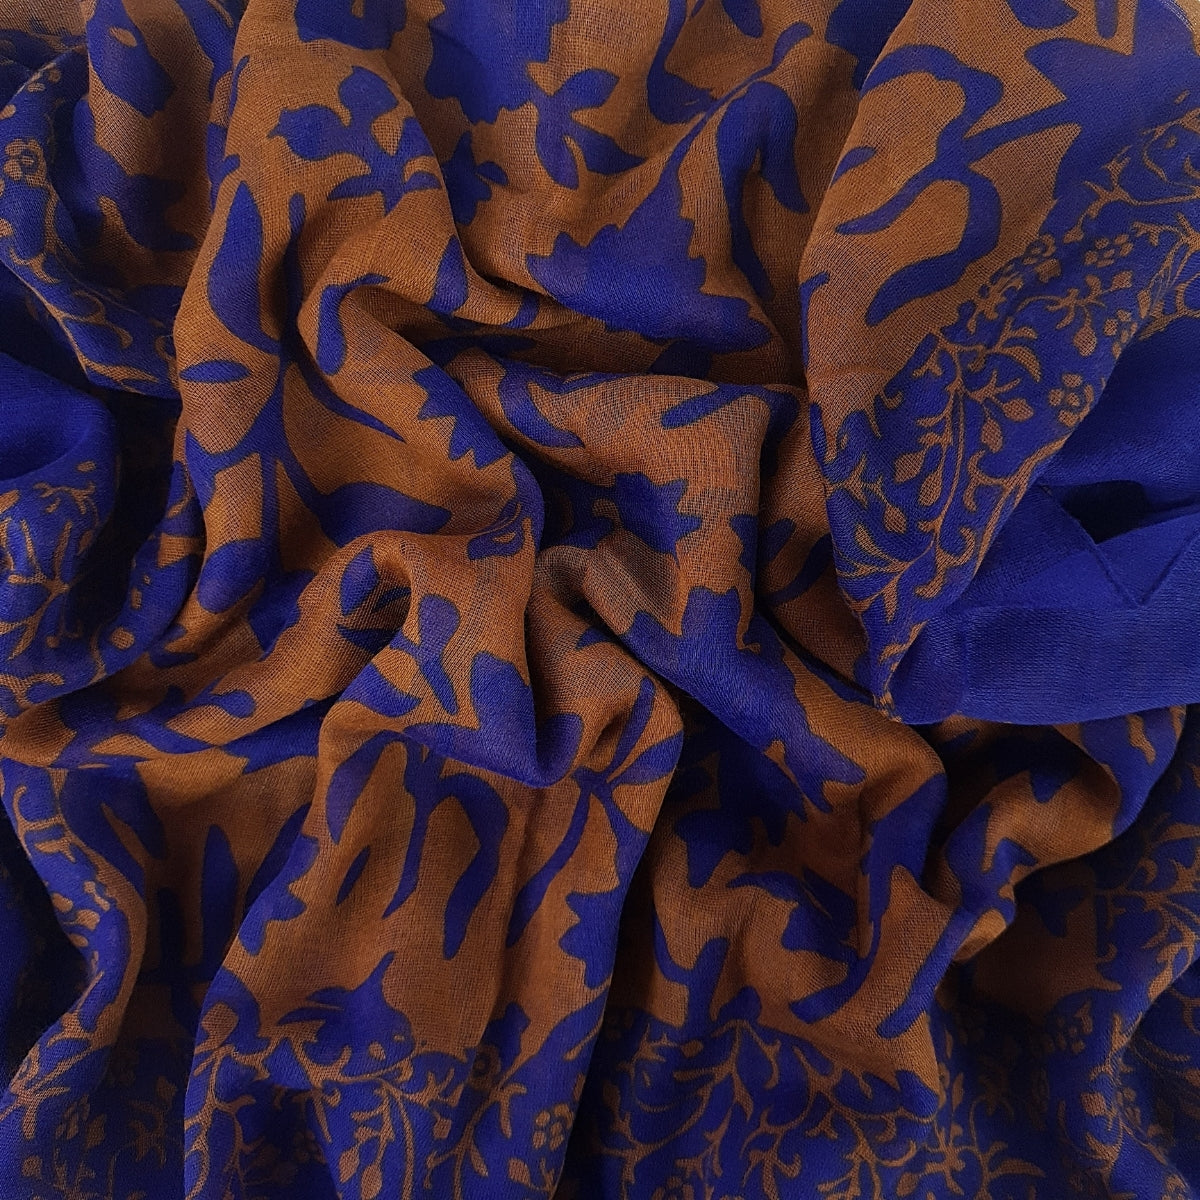 Bufanda Isaac Mizrahi Floral Mix Azul Y Marron Icl4920P24